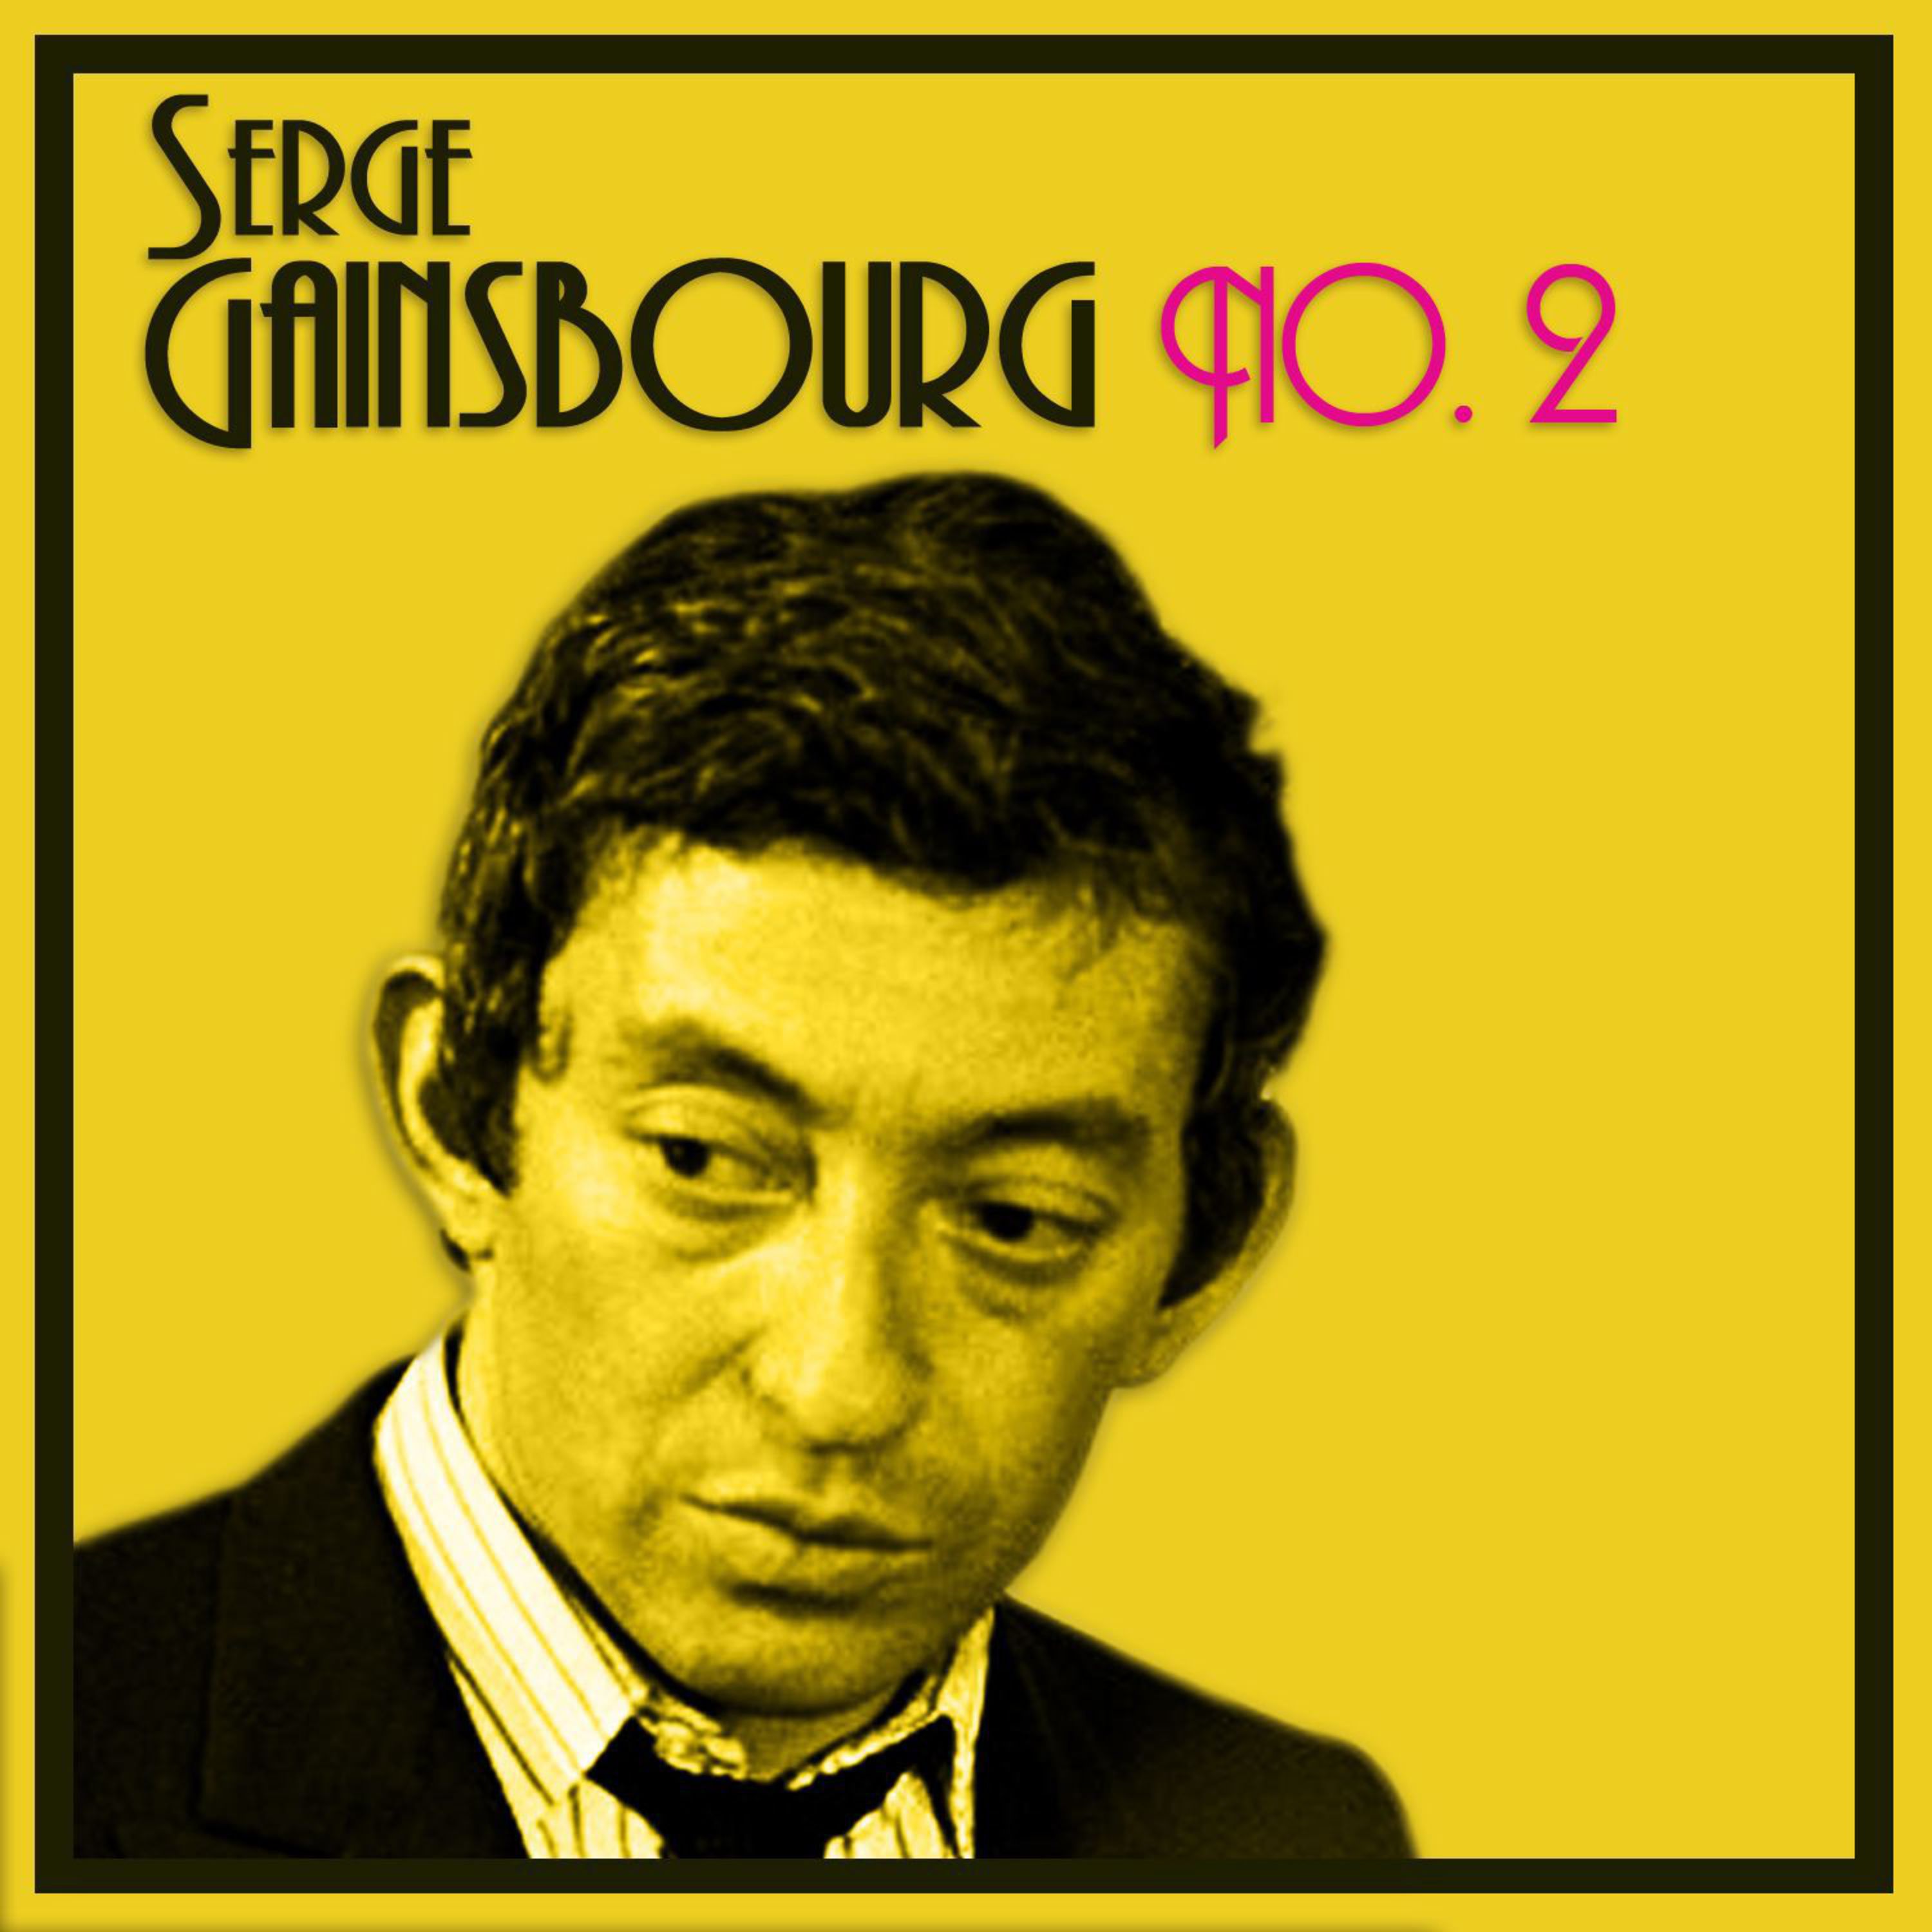 Serge Gainsbourg No. 2 (Original 1959 Album - Digitally Remastered)